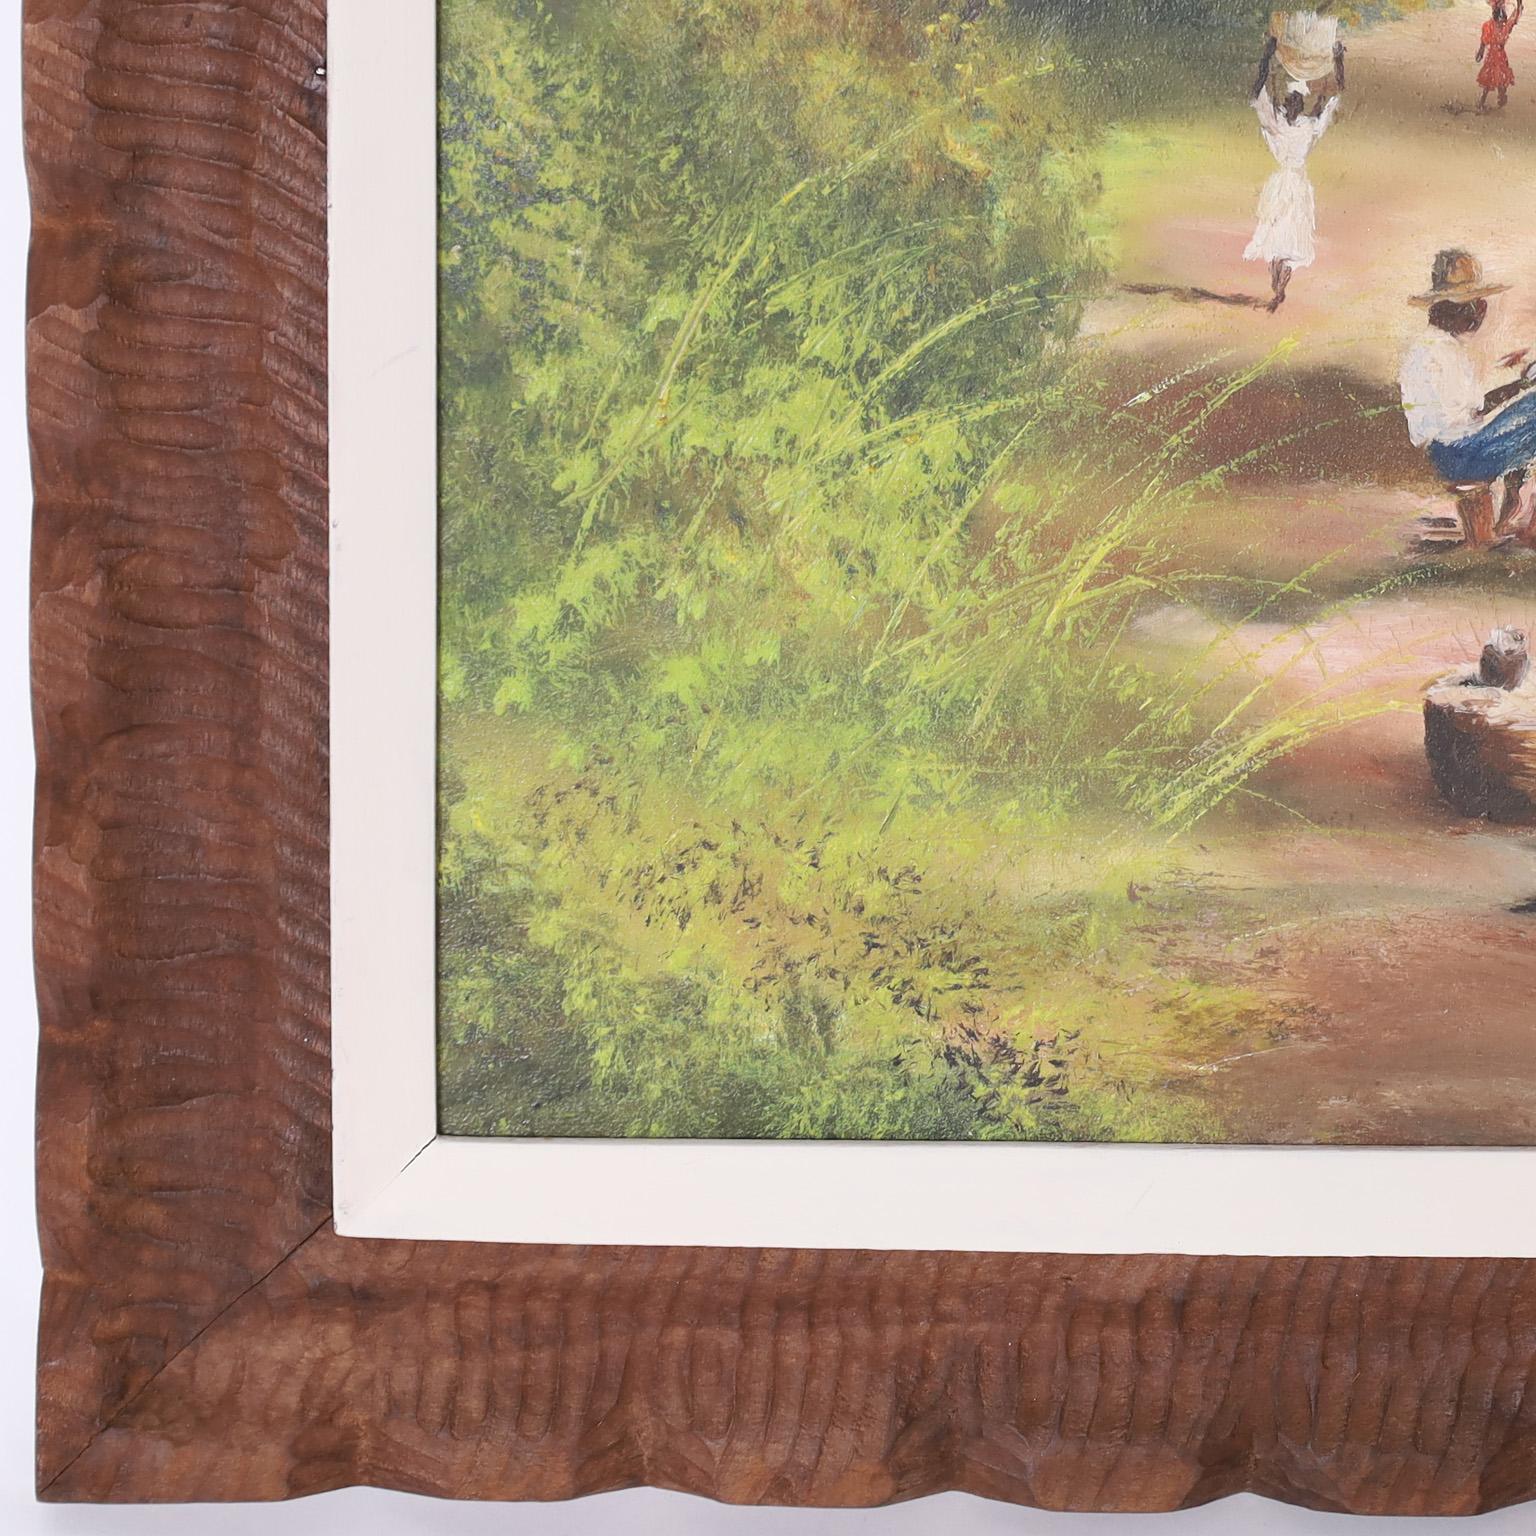 Peinture à l'huile sur toile représentant un chemin ou une route avec des personnages engagés dans la vie quotidienne dans un cadre tropical, exécutée dans un style impressionniste atypique. Signé Poisson Haïti en bas à droite et présenté dans son